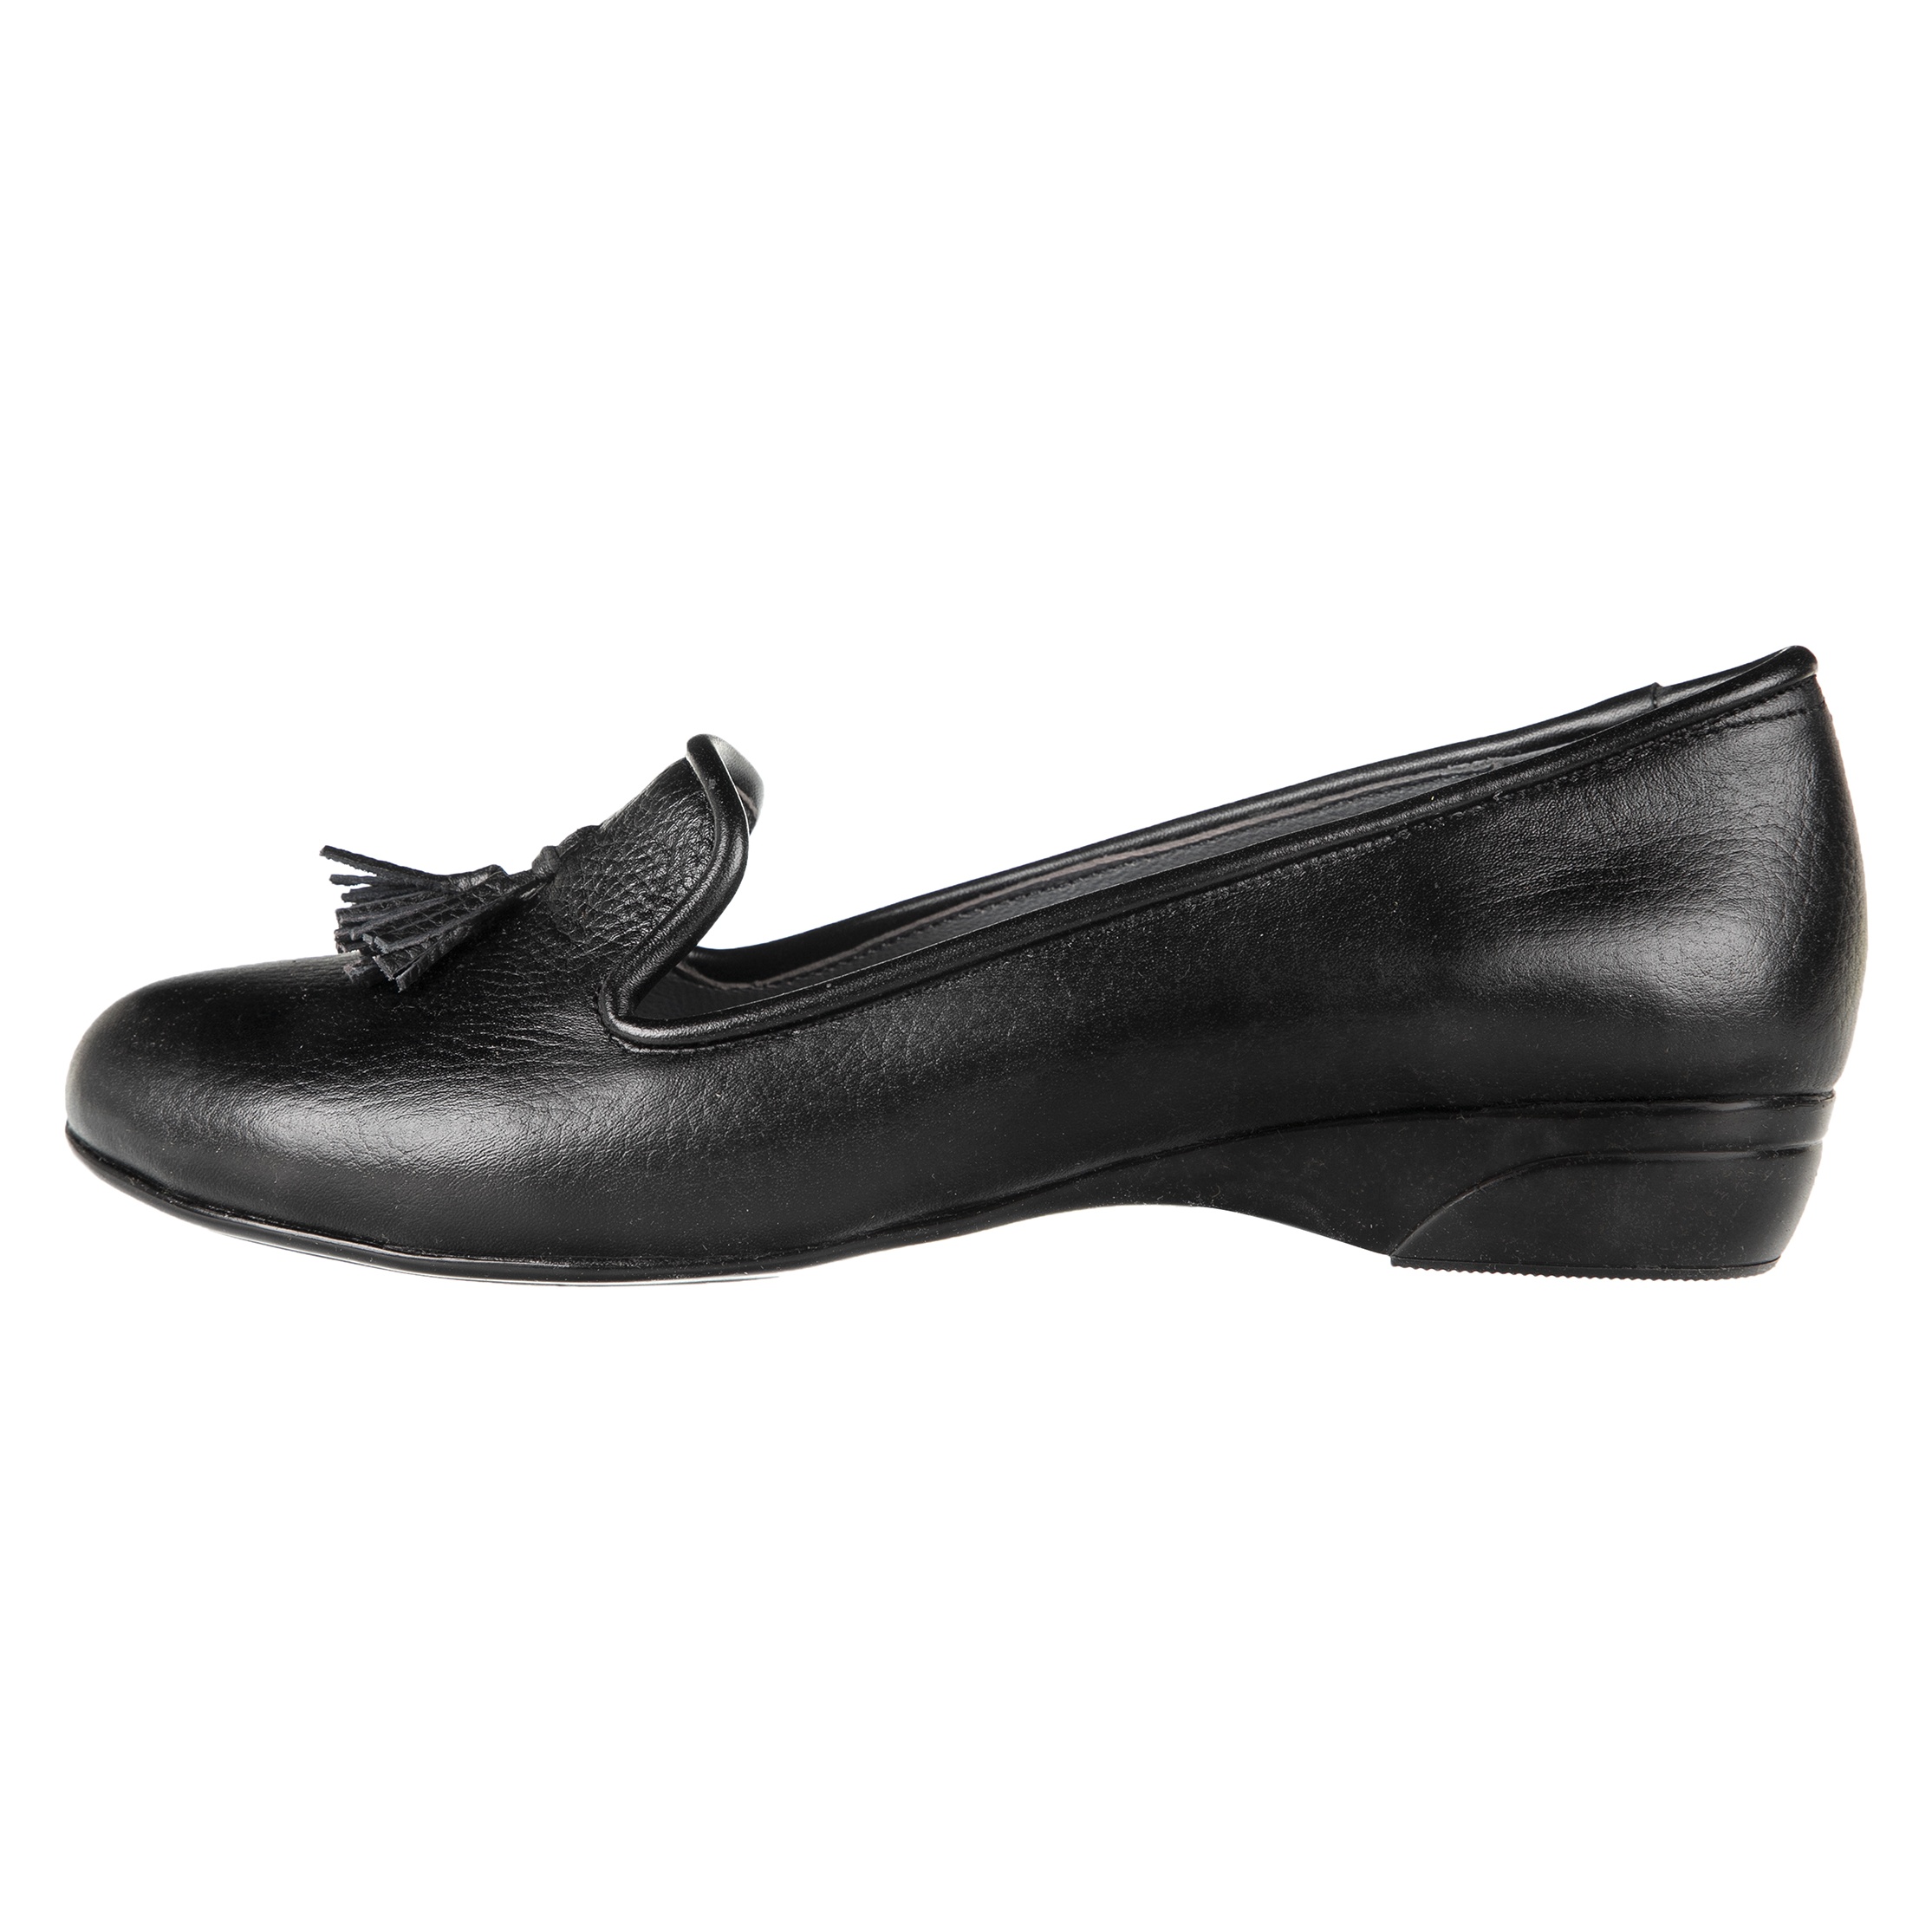 کفش زنانه دلفارد مدل 5183A500-101 - مشکی - 1